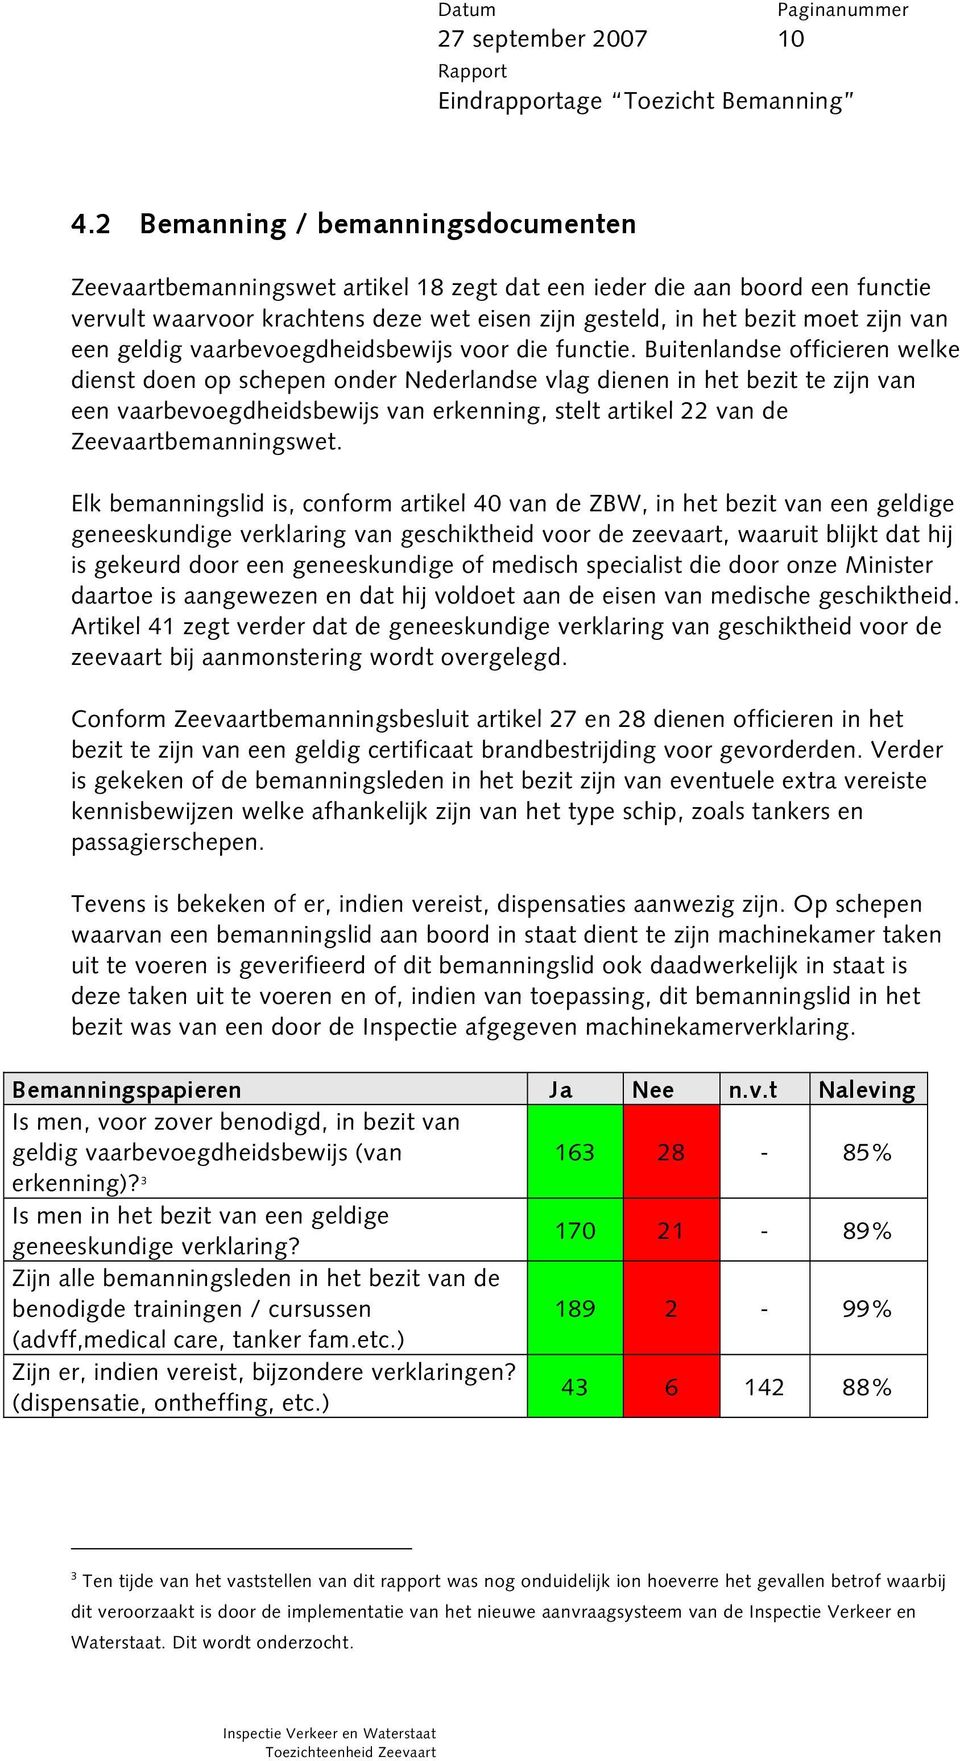 Buitenlandse officieren welke dienst doen op schepen onder Nederlandse vlag dienen in het bezit te zijn van een vaarbevoegdheidsbewijs van erkenning, stelt artikel 22 van de Zeevaartbemanningswet.